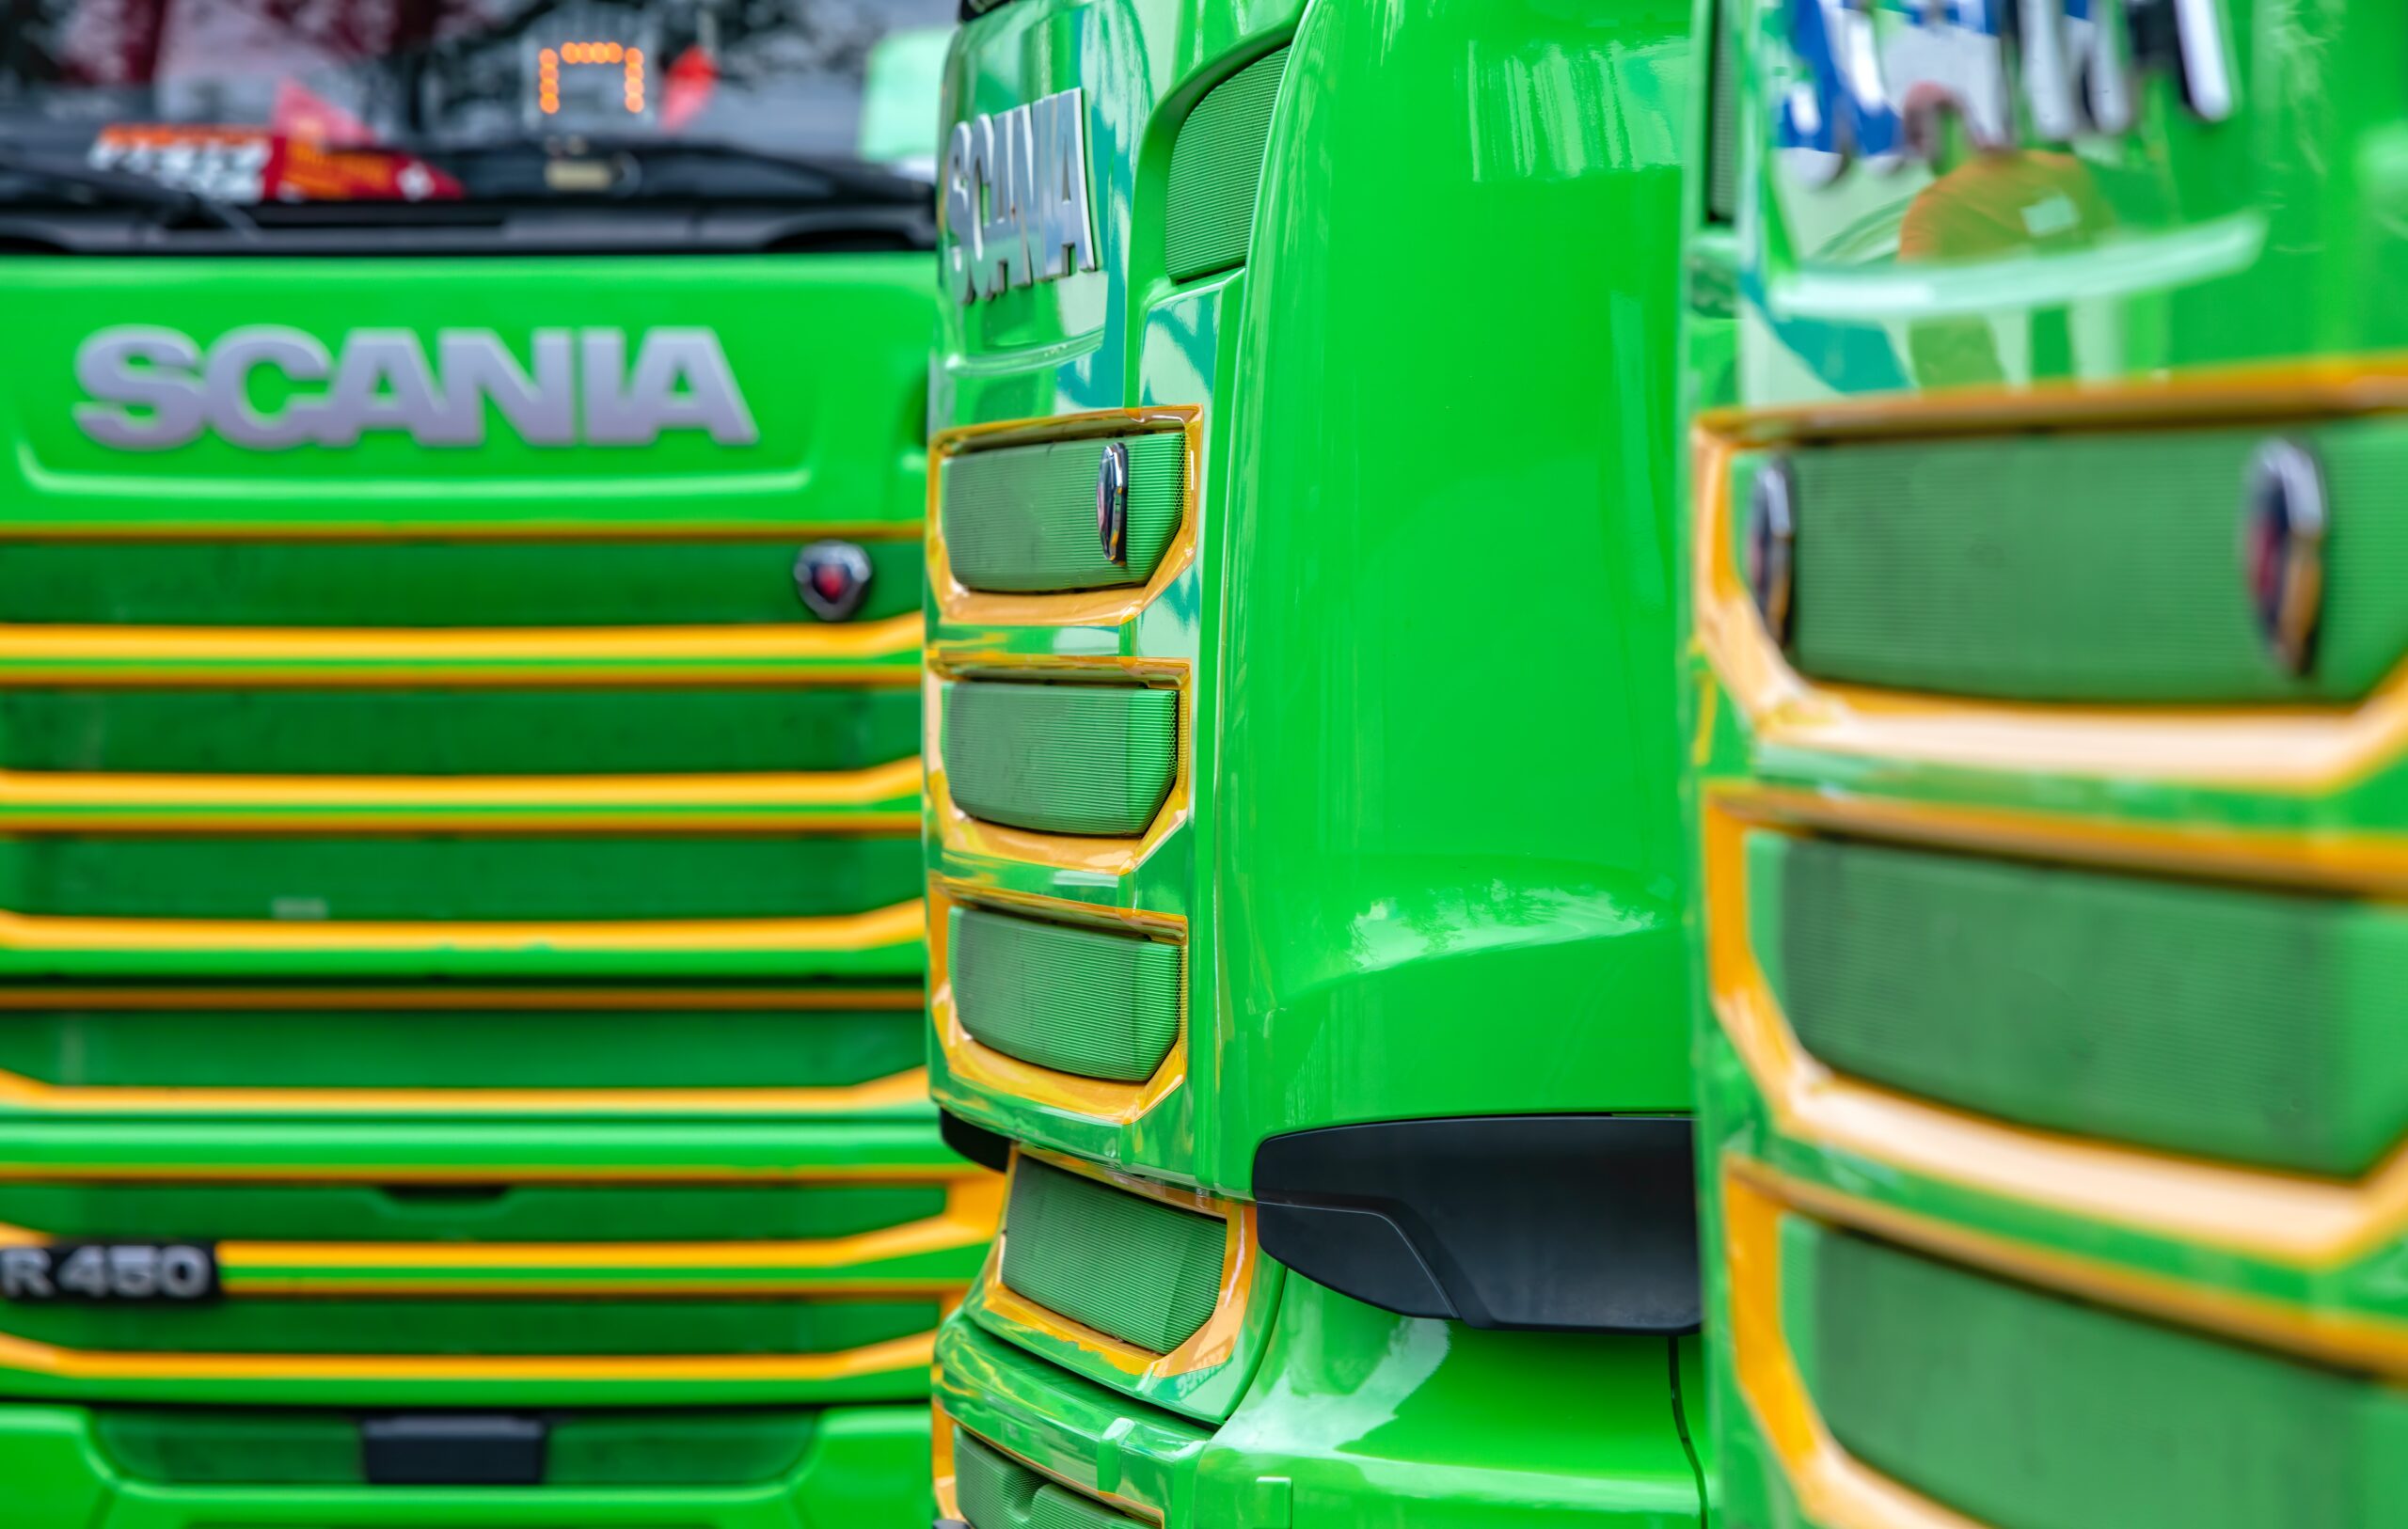 Scania, uno de los principales fabricantes de camiones y autobuses